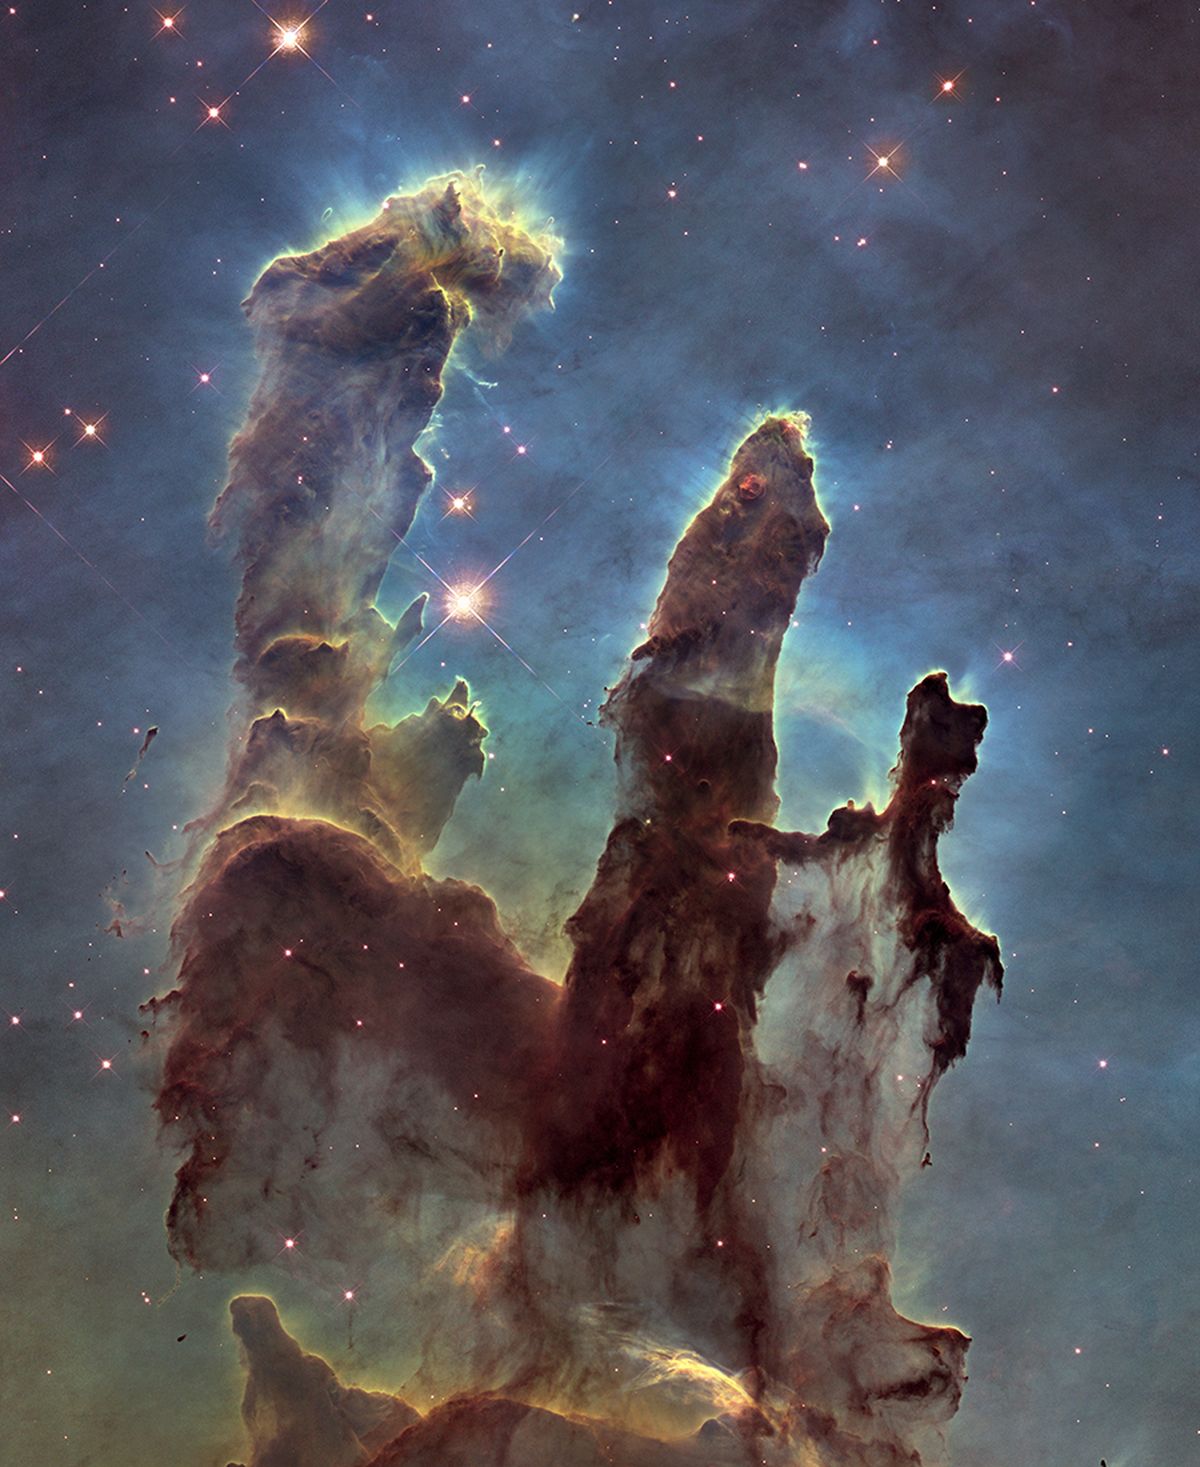 Oma 25. aastapäevaks tegi Hubble oma kuulsaimast modellist uue pildi, tänu millele saime «Loomise sammastena» tuntud tähtede tekke piirkonnast oluliselt parema kujutise. Sammaste kõrgus on muljetavaldavad viis valgusaastat ja nende gaasist ja kosmosetolmust koosnevas sisemuses sünnivad tähed.